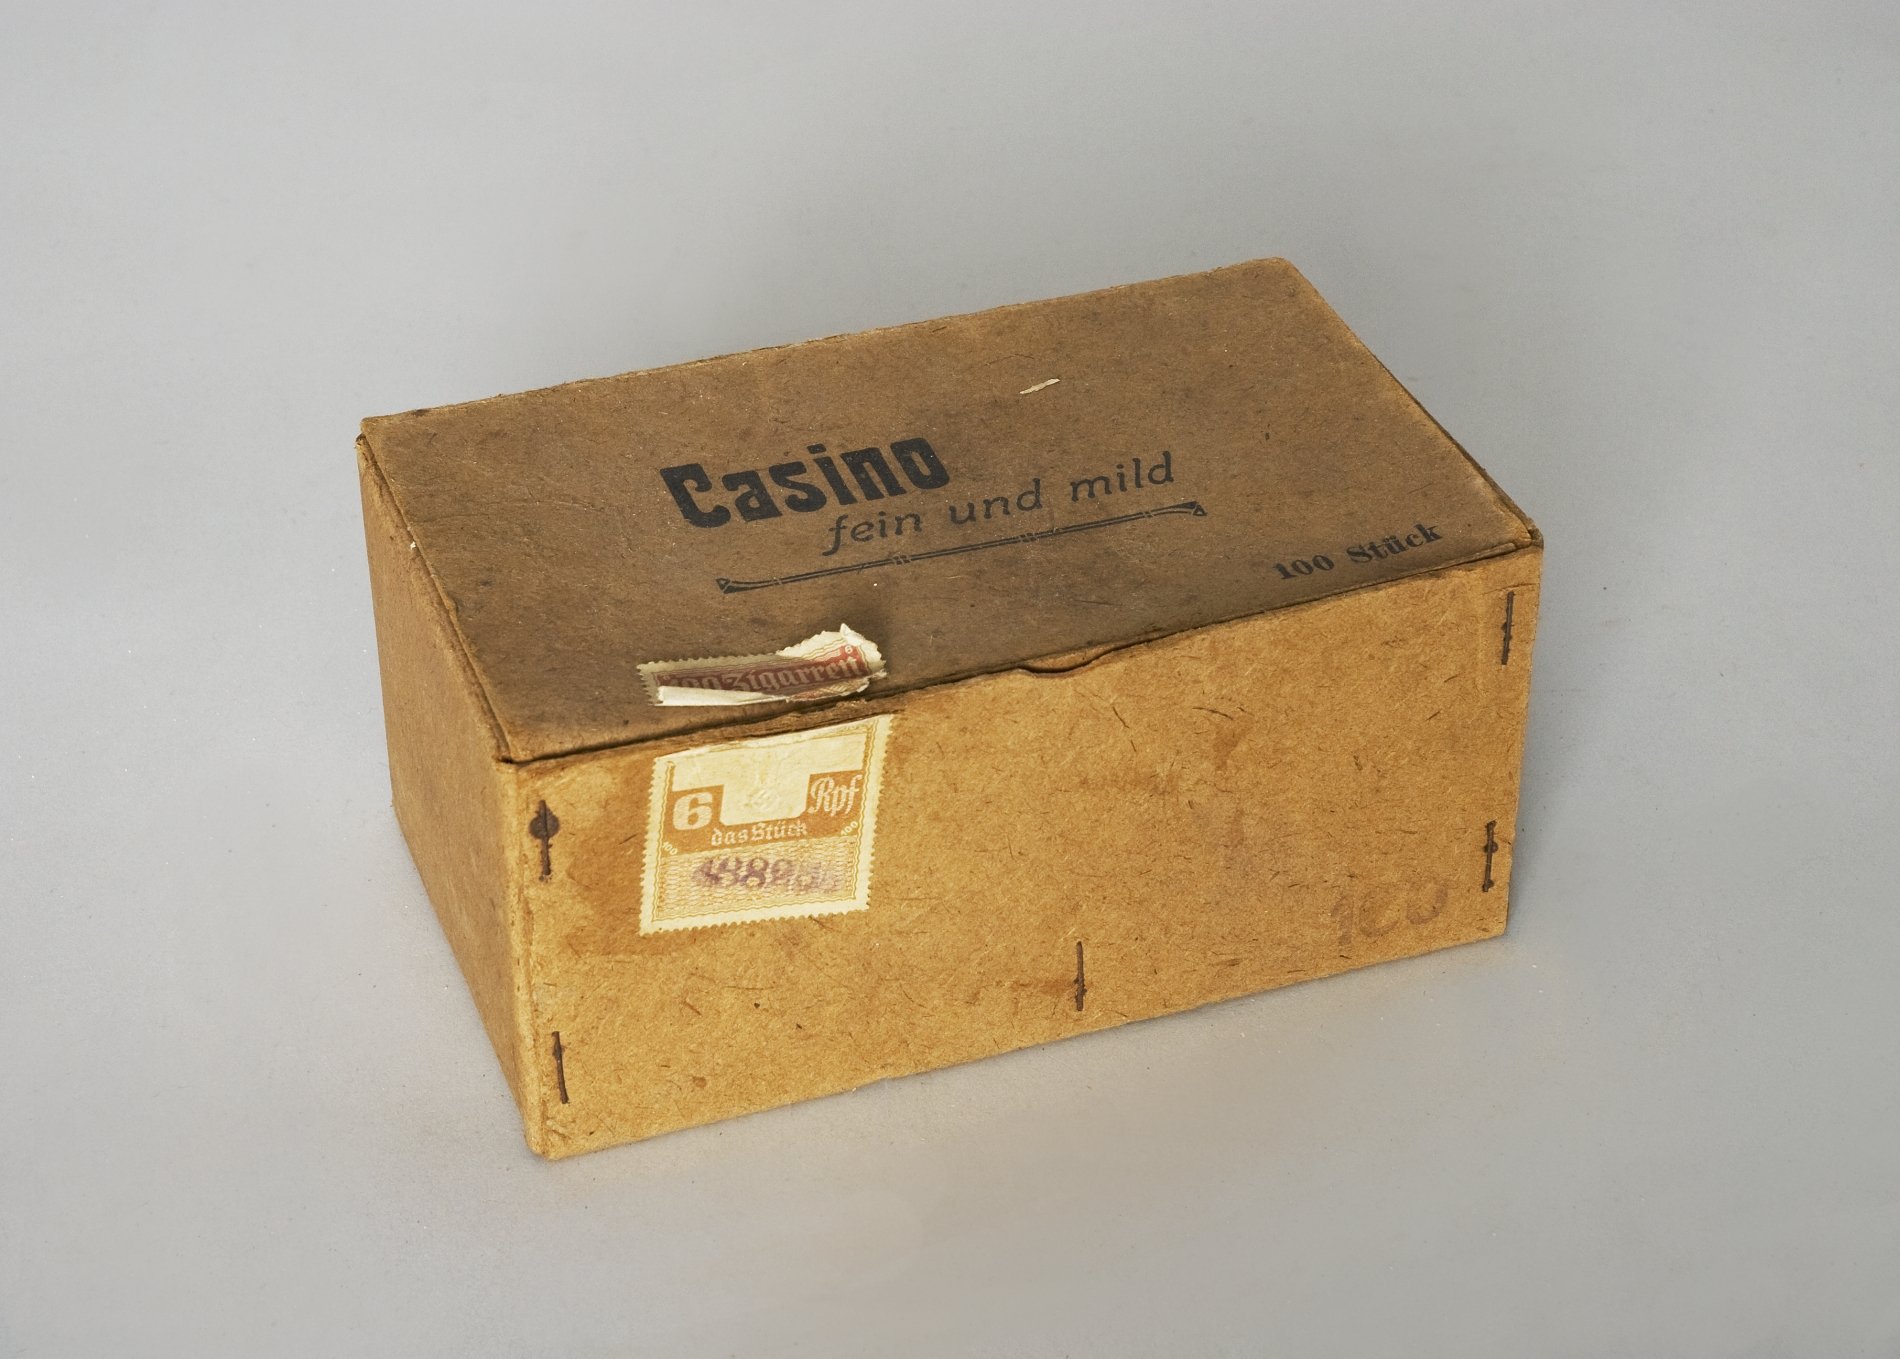 Zigarrenkarton "Casino - fein und mild" (Stiftung Domäne Dahlem - Landgut und Museum, Weiternutzung nur mit Genehmigung des Museums CC BY-NC-SA)